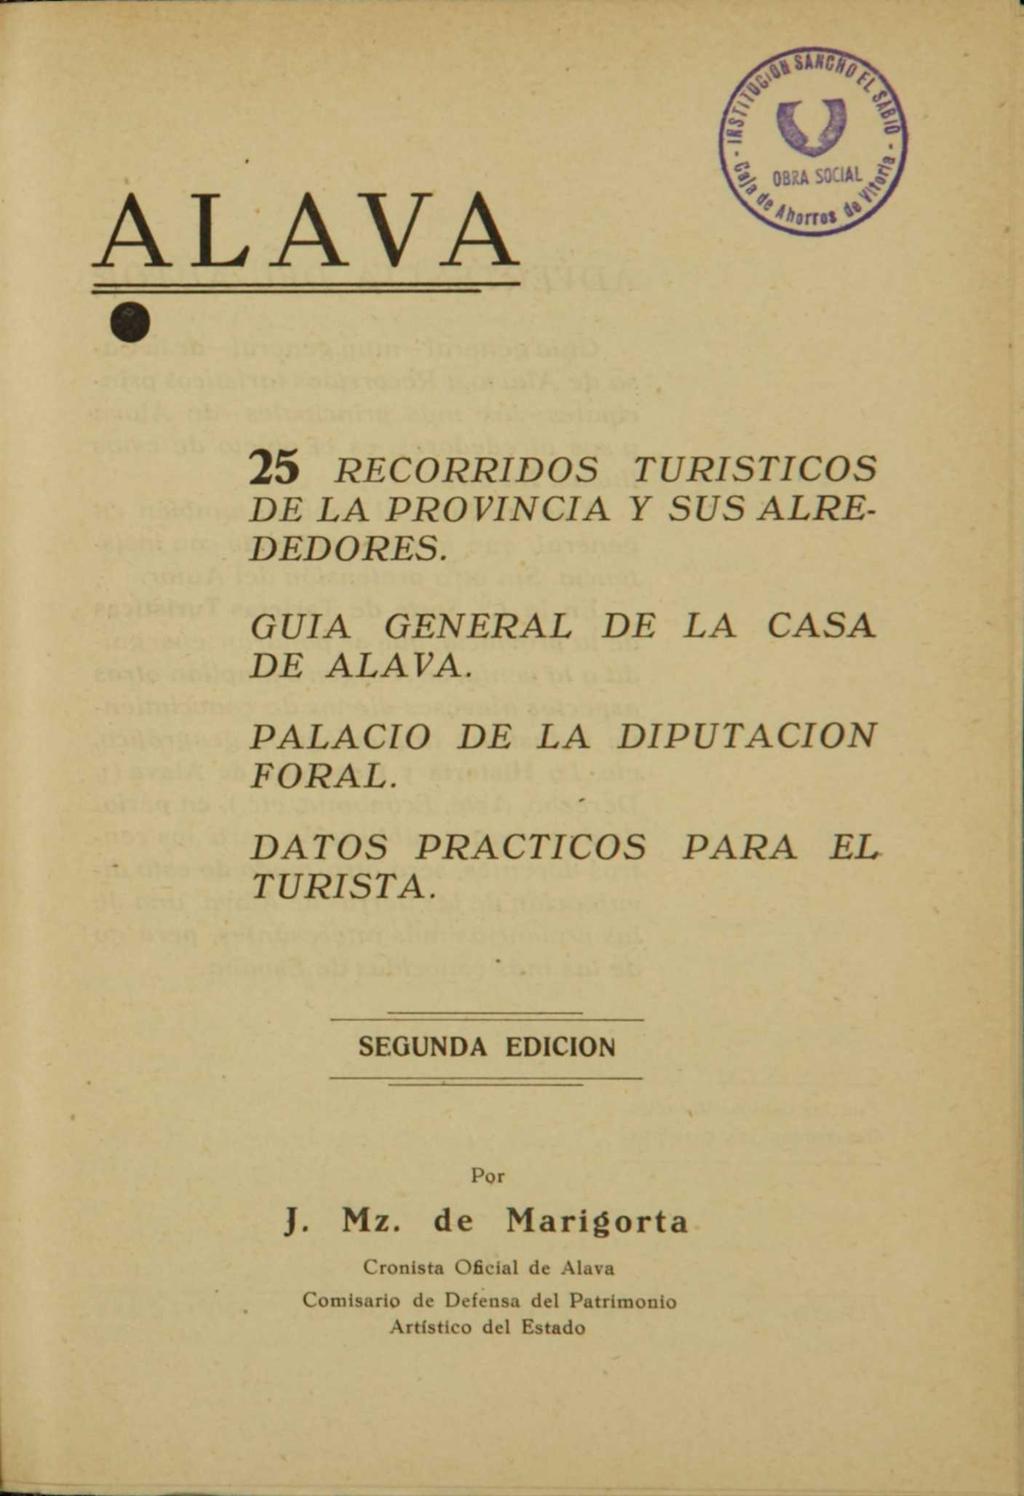 ALAVA 25 RECORRIDOS TURISTICOS DE LA PROVINCIA Y SUS ALRE DEDORES. GUIA GENERAL DE LA CASA DE ALAVA. PALACIO DE LA DIPUTACION FORAL.